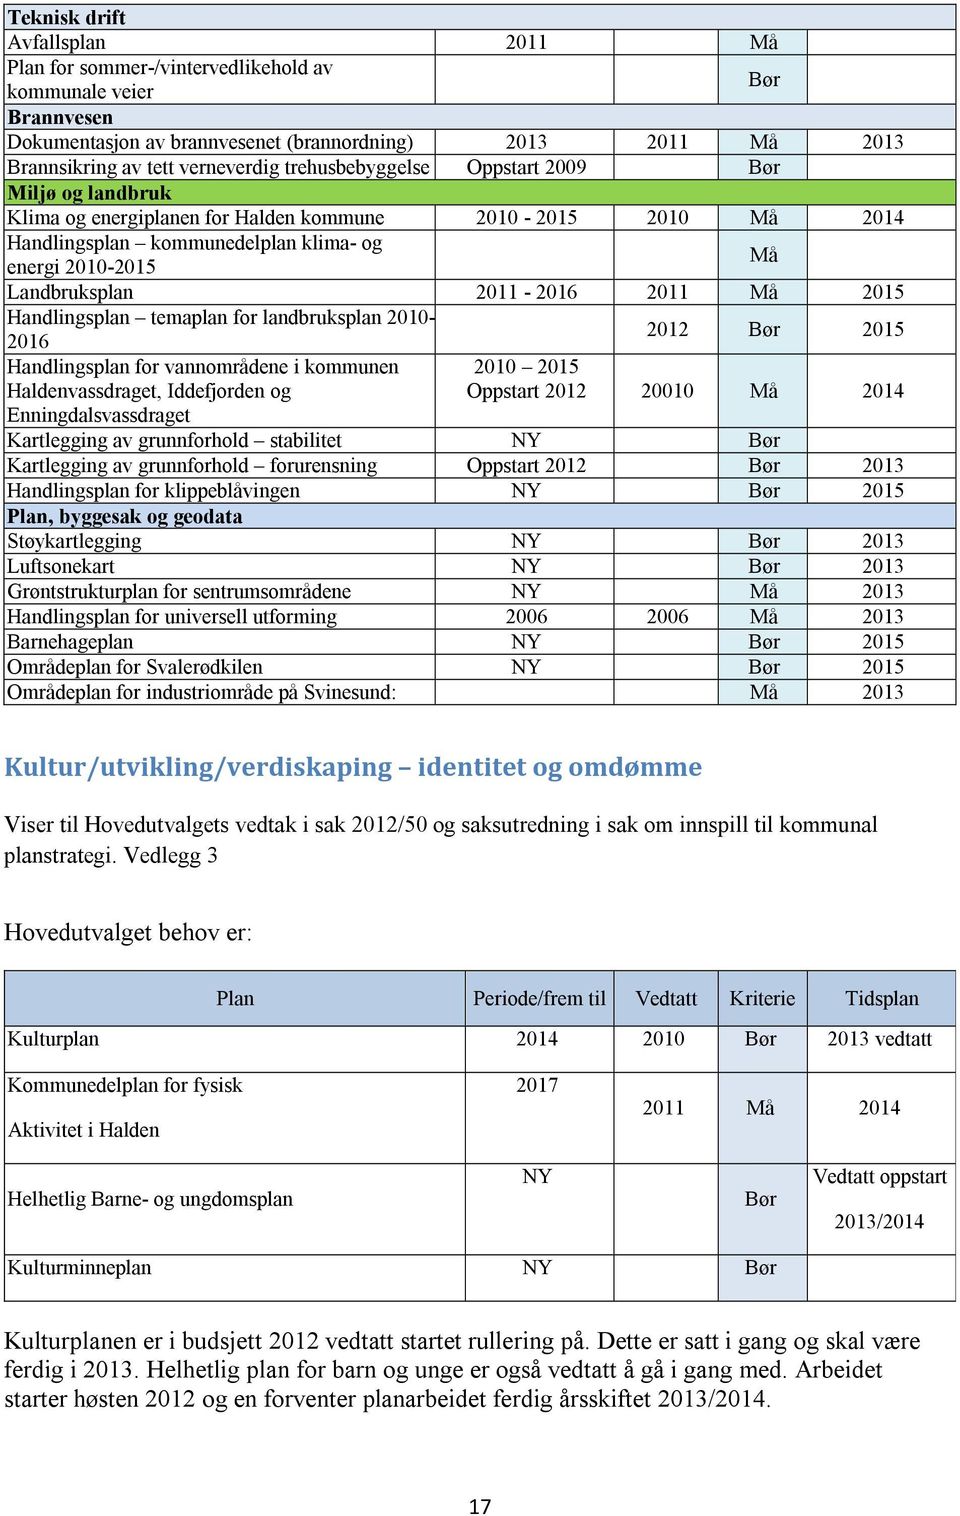 2011 Må 2015 Handlingsplan temaplan for landbruksplan 2010-2012 Bør 2015 2016 Handlingsplan for vannområdene i kommunen Haldenvassdraget, Iddefjorden og Enningdalsvassdraget 2010 2015 Oppstart 2012